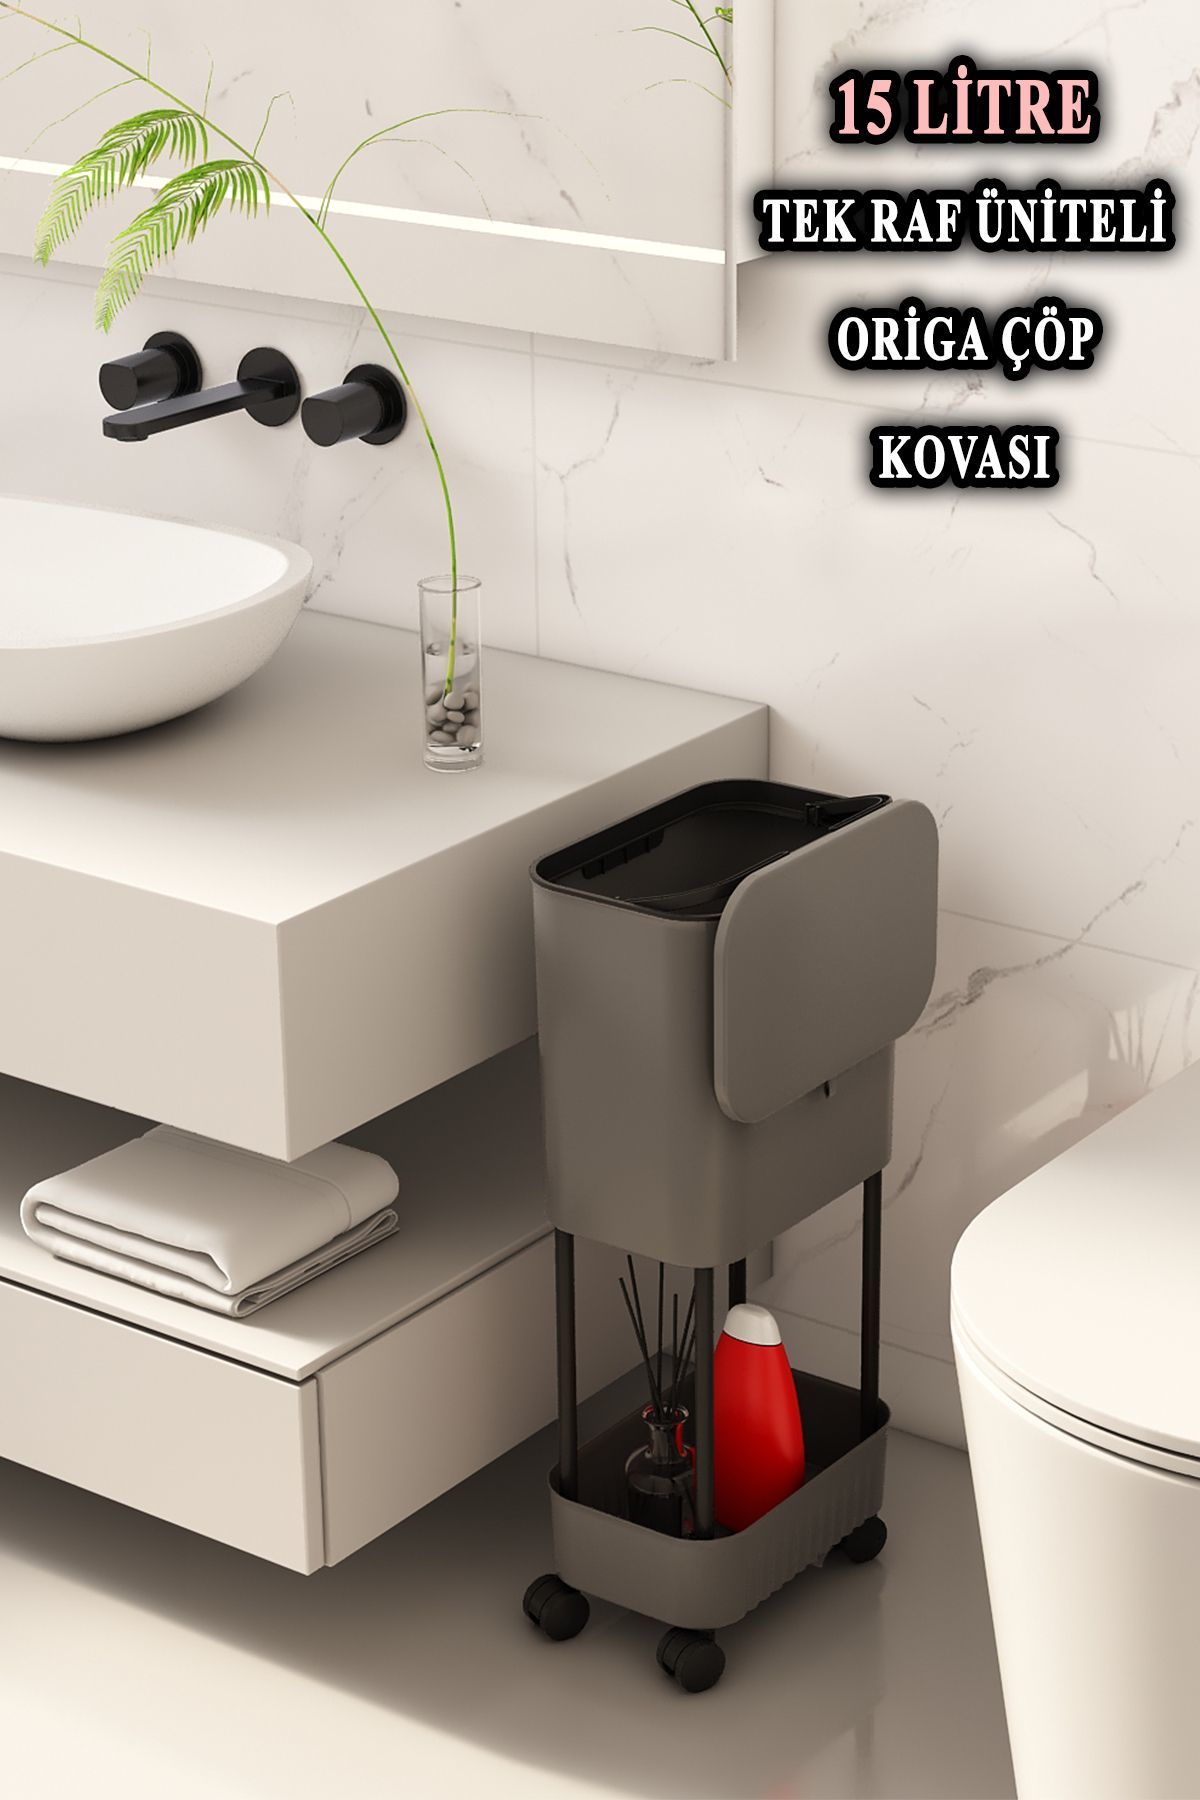 Origa Tek Raf Üniteli Tekerlekli Fonksiyonel Kapaklı Banyo Ve Mutfak Çöp Kovası Gri